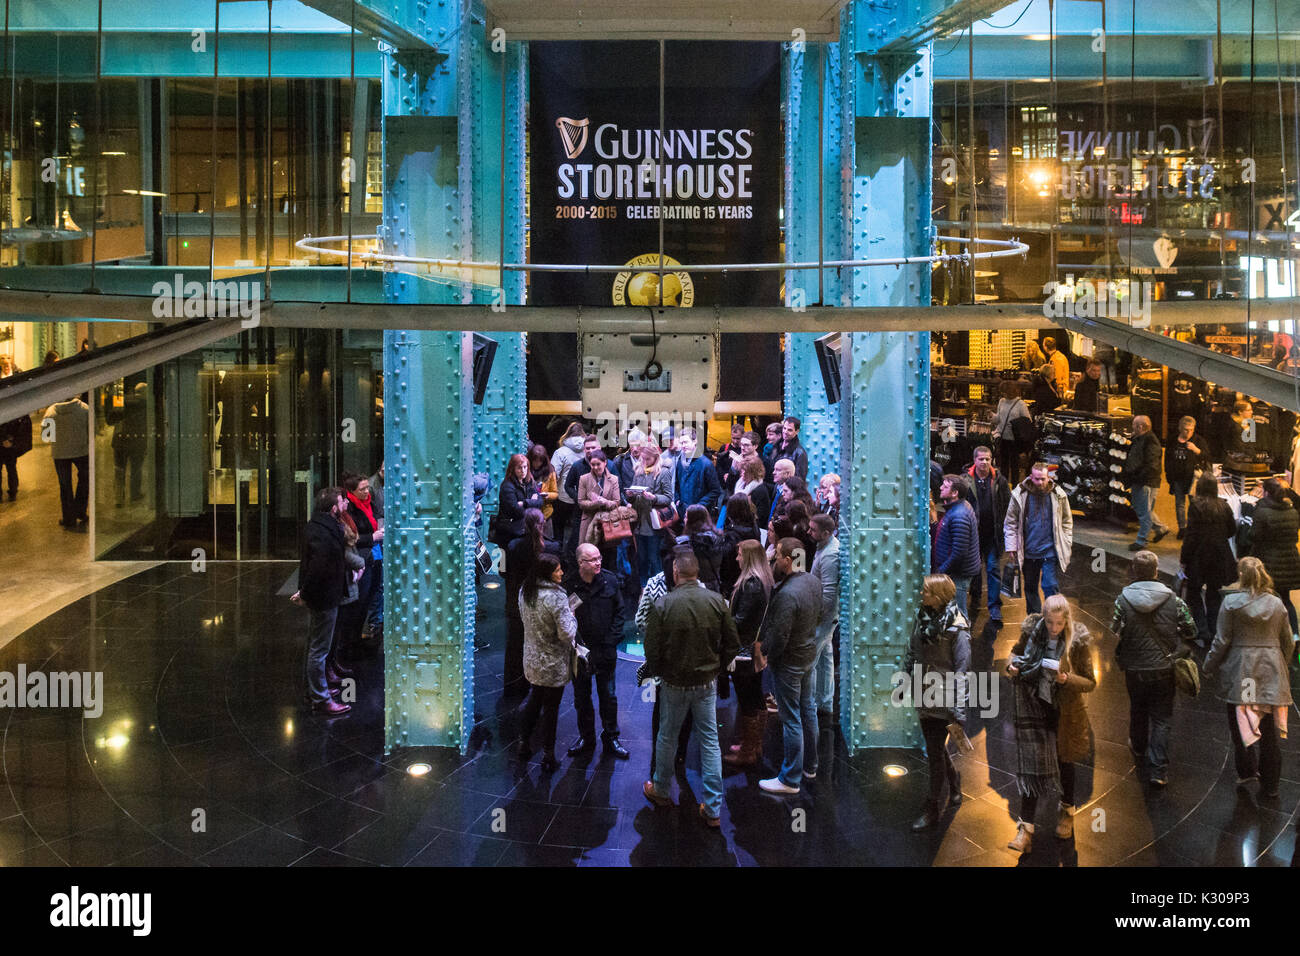 Guinness Storehouse interior, Dublin, Irland - Besucher hören sich die Einführungsrede an Stockfoto